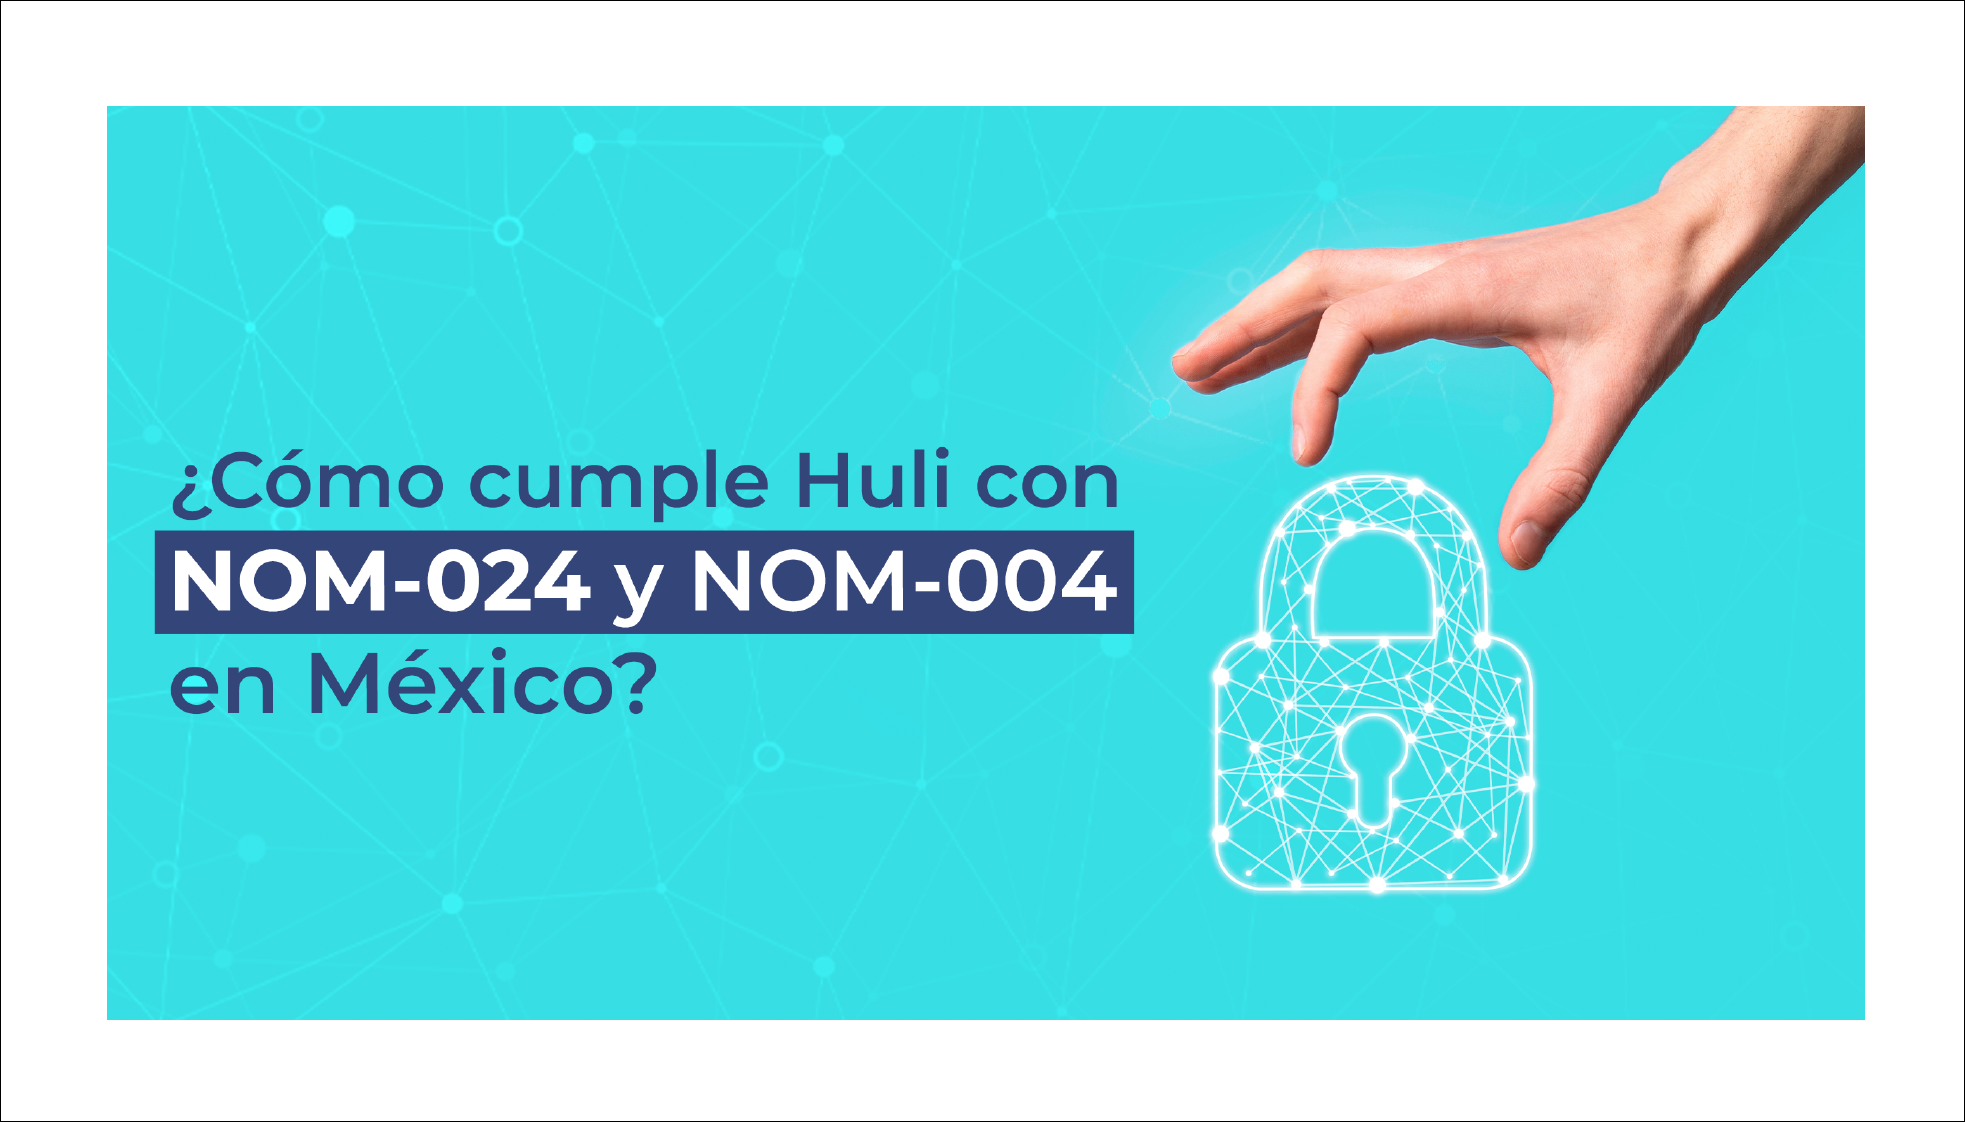 ¿Cómo cumple Huli con las NOM-024 y NOM-004 en México?